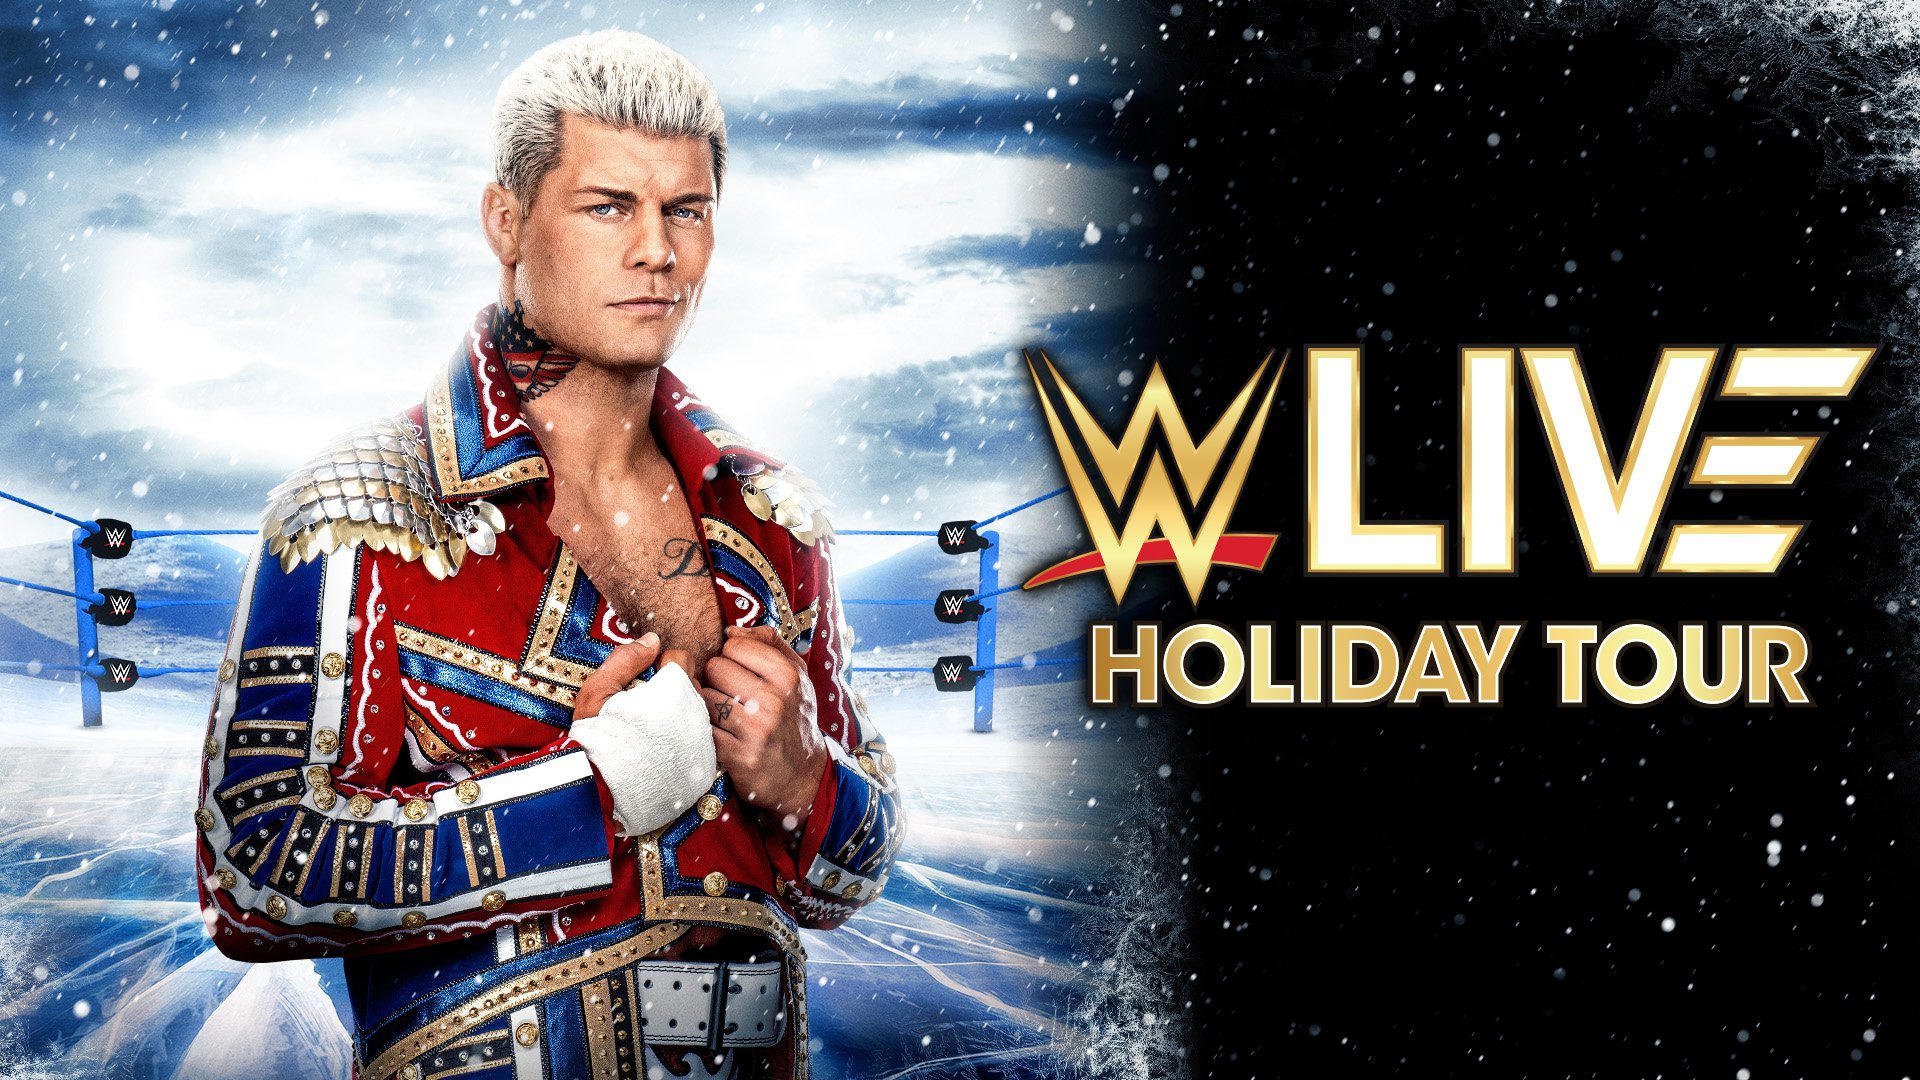 WWE Live Holiday Tour WWE